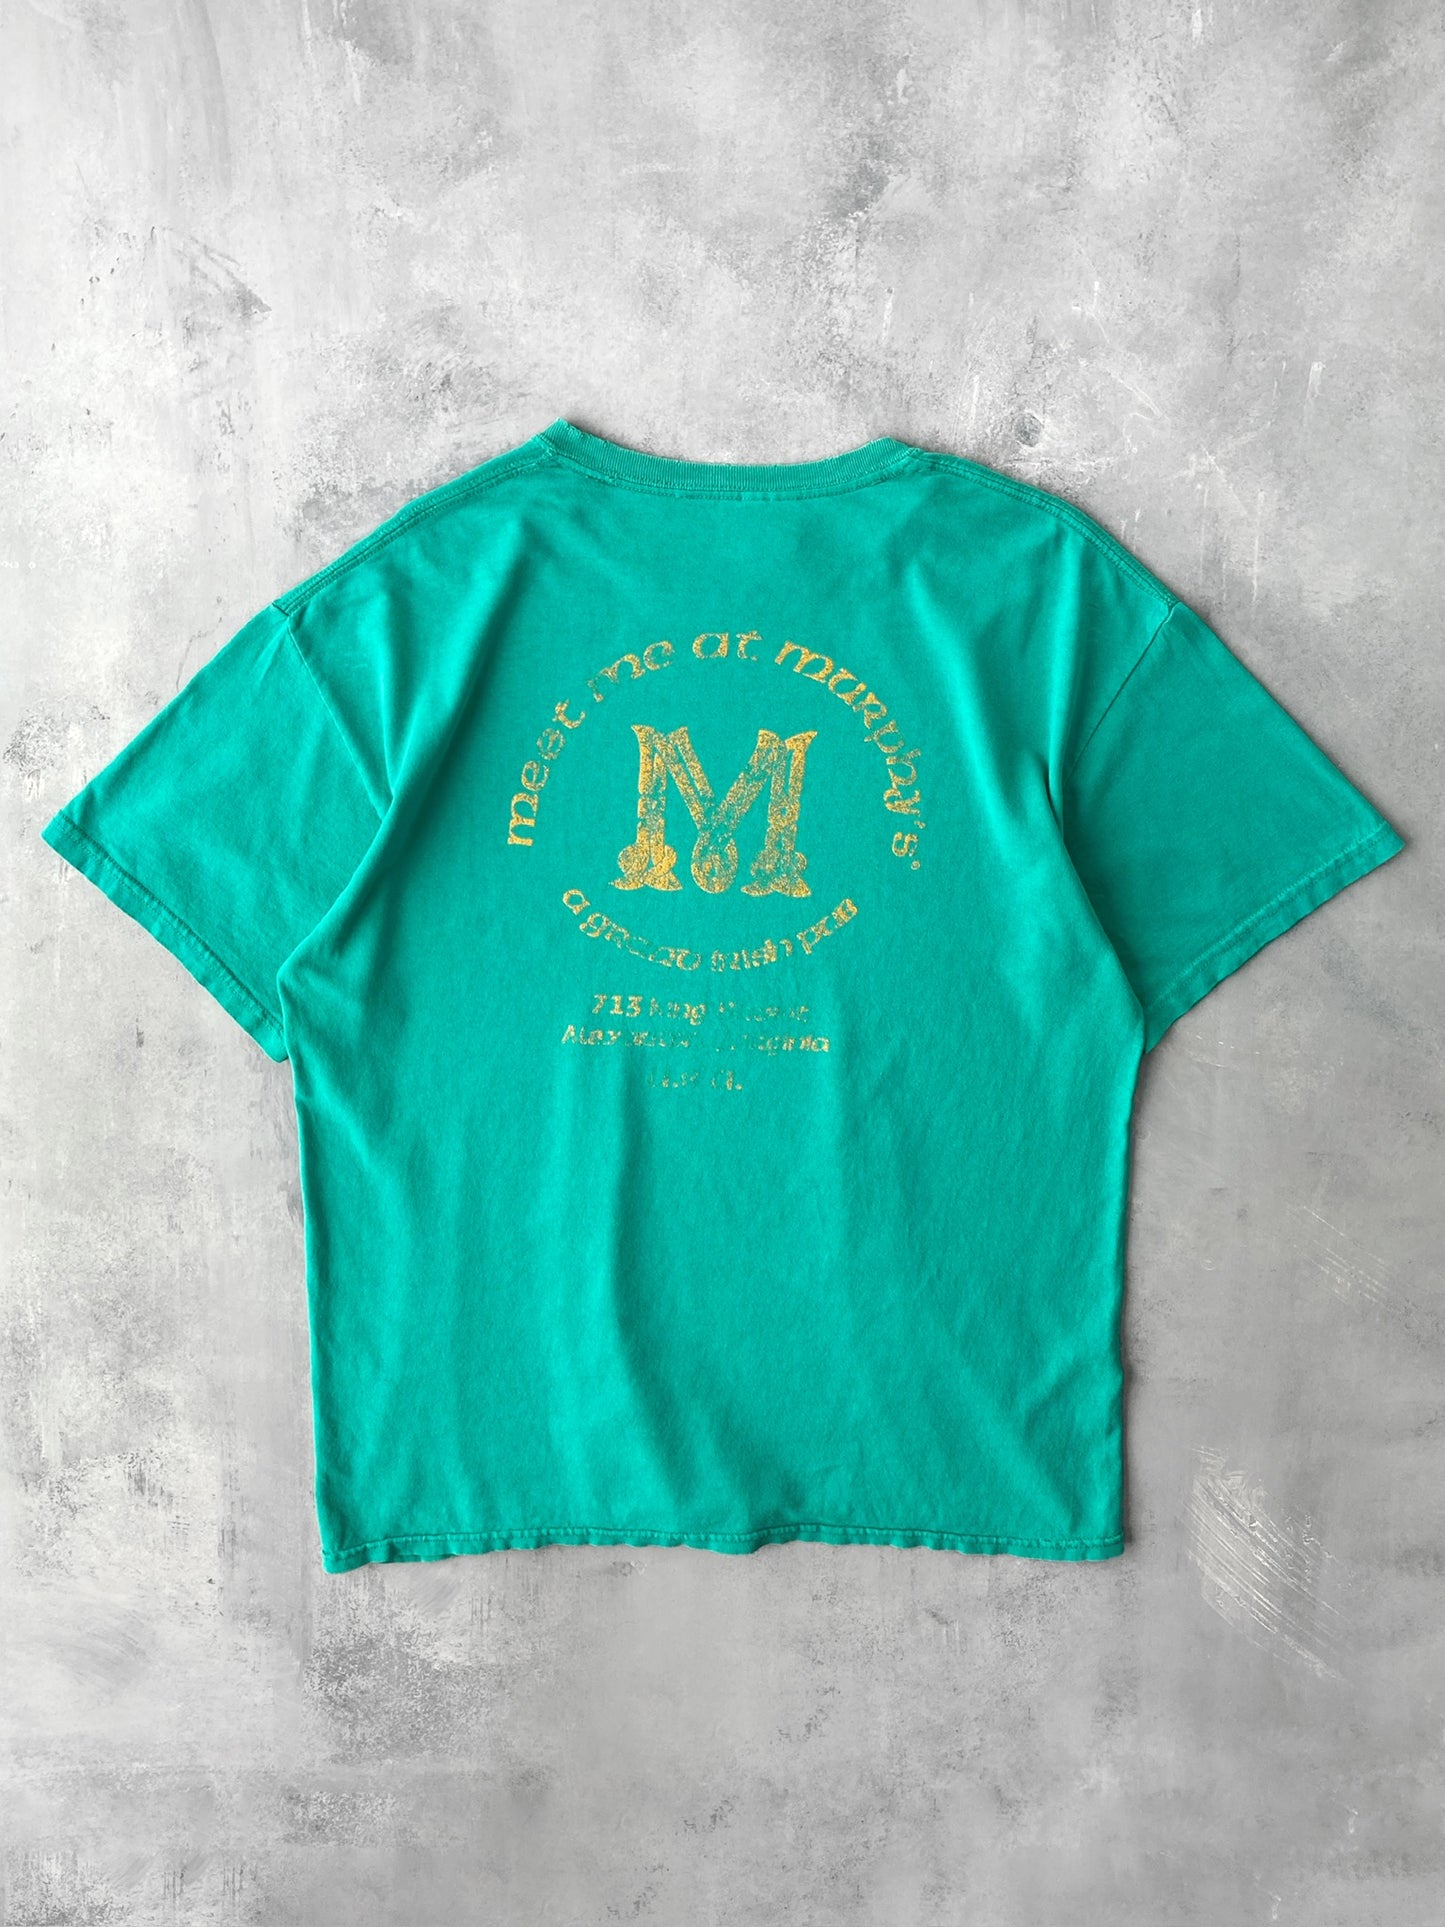 Murphy's Pub T-Shirt 00's - Large